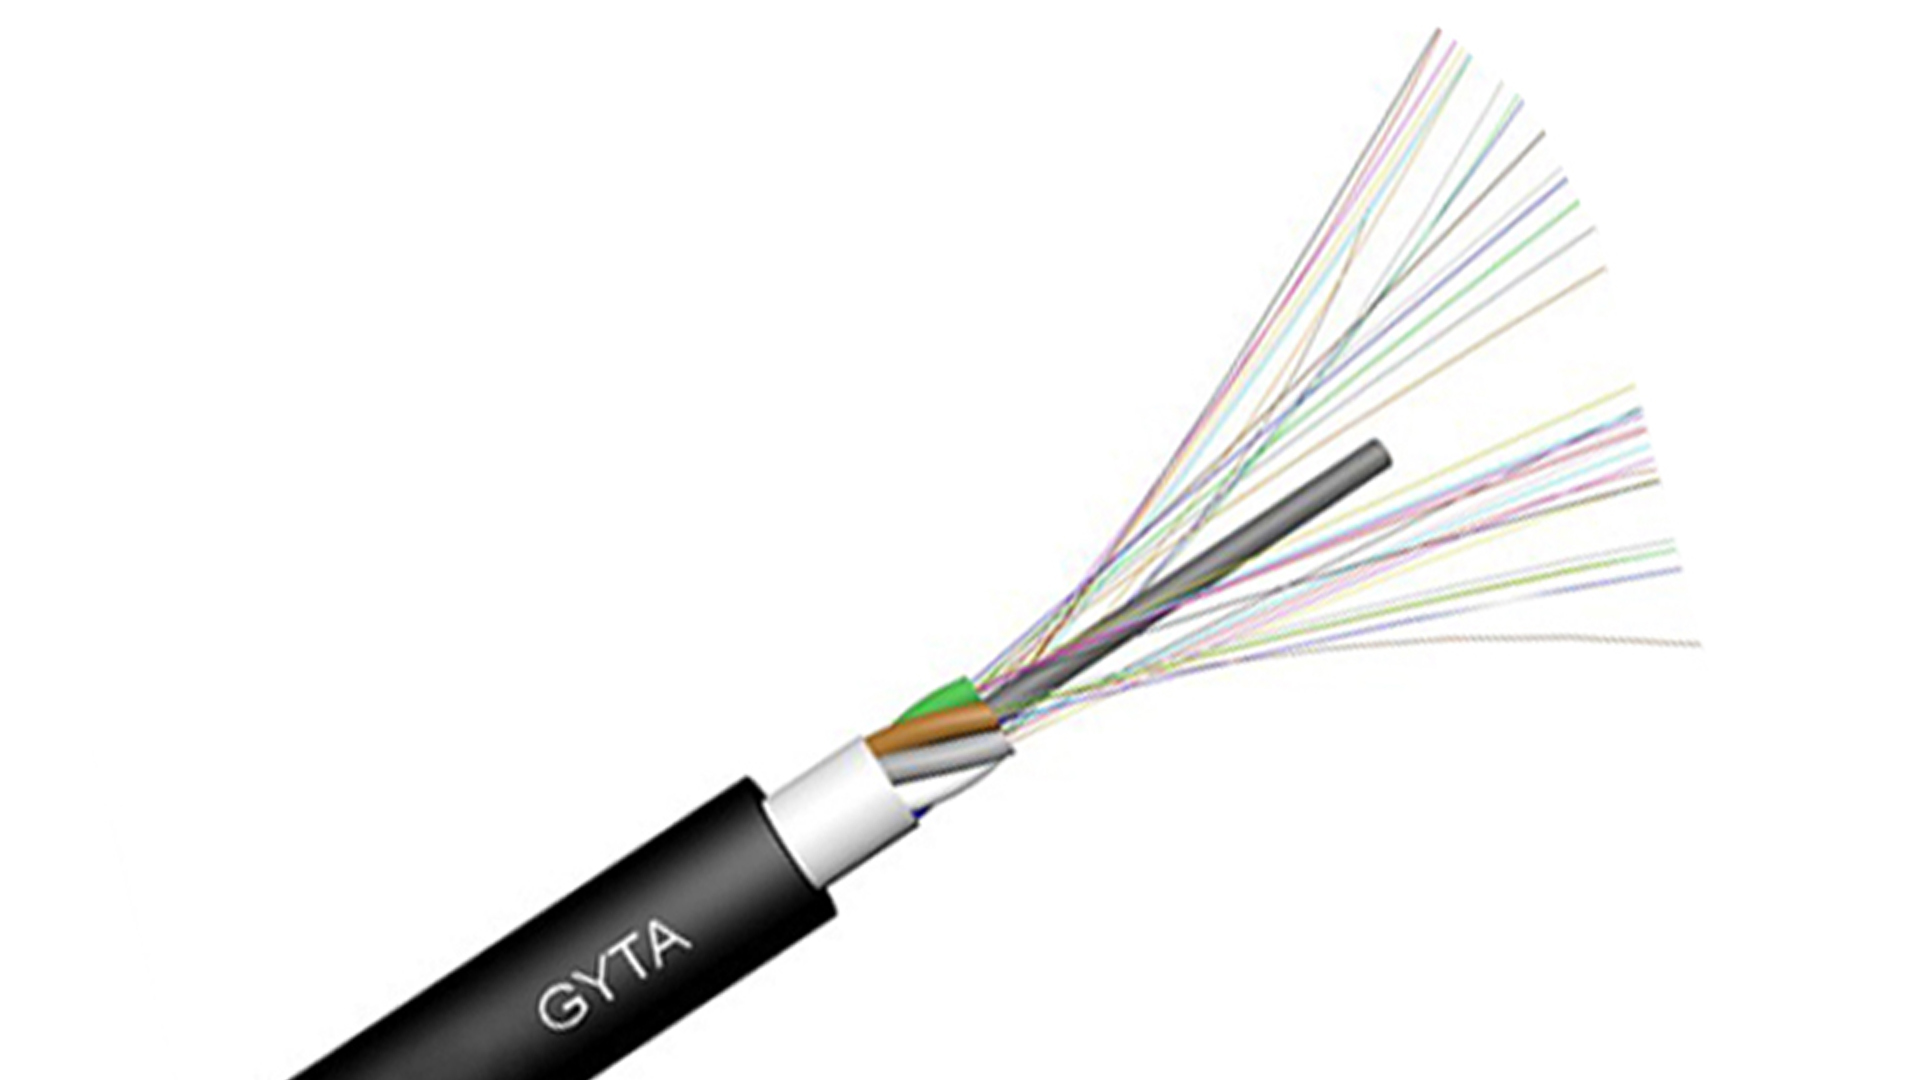 Оптический кабель. Многомодовый кабель ВОЛС. Оптический кабель GJPFJH-8b6a1 Optical Cable (негорючий, для внутренних работ). Волоконно оптический кабель 2532. Кабель канализационный волоконно-оптический, модель: GYTA 8.